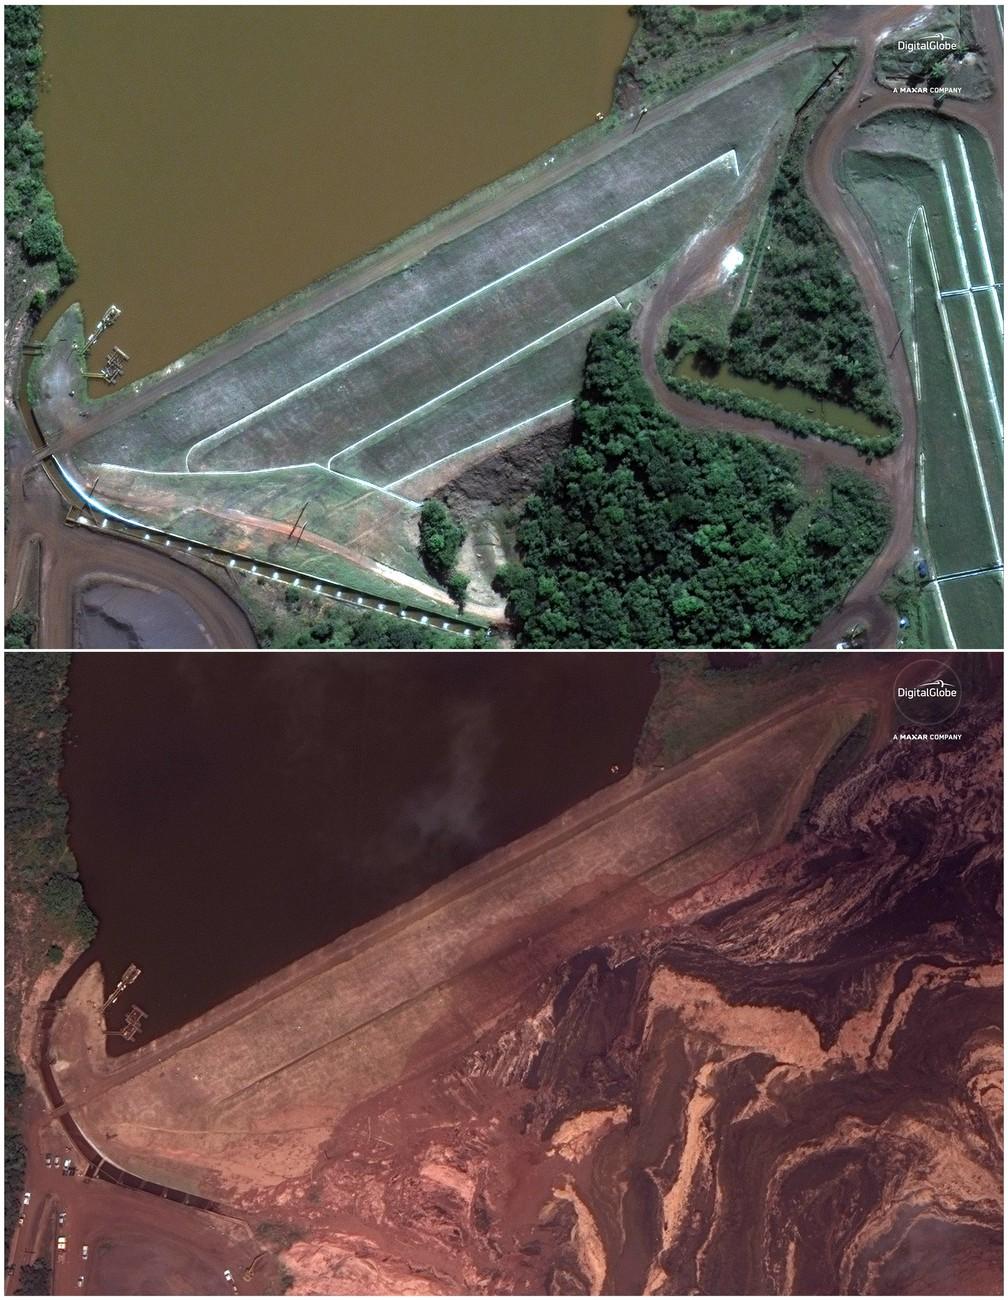 Deux images satellite montrant la région de Brumadinho, avant (en haut, le 2 juin 2018) et après (en bas, le 26 janvier 2019) la rupture du barrage minier de Vale. [Keystone - DigitalGlobe, a Maxar company via AP]